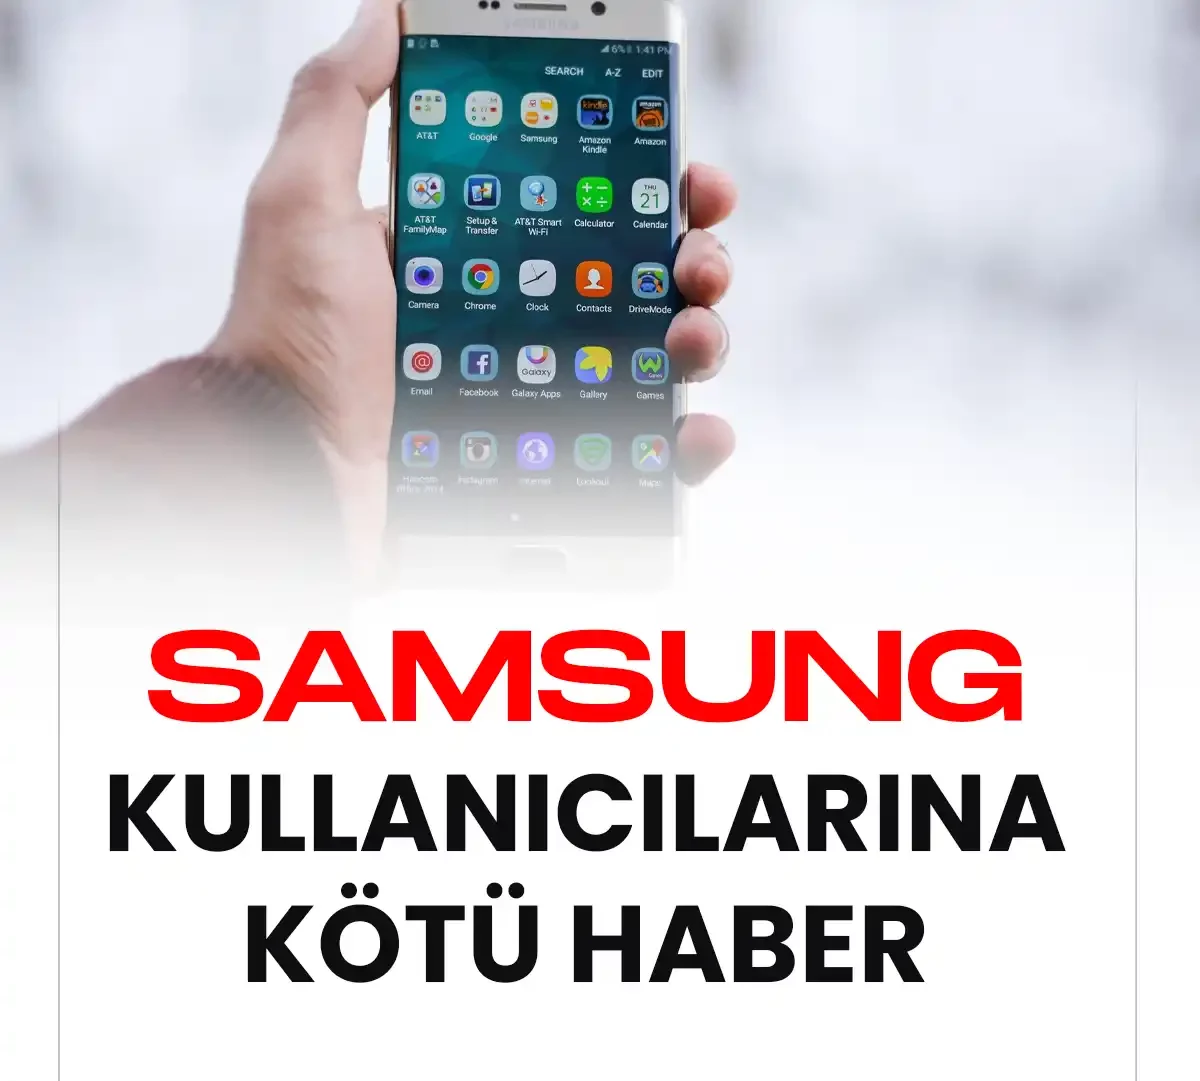 Samsung kullanıcılarına kötü haber.